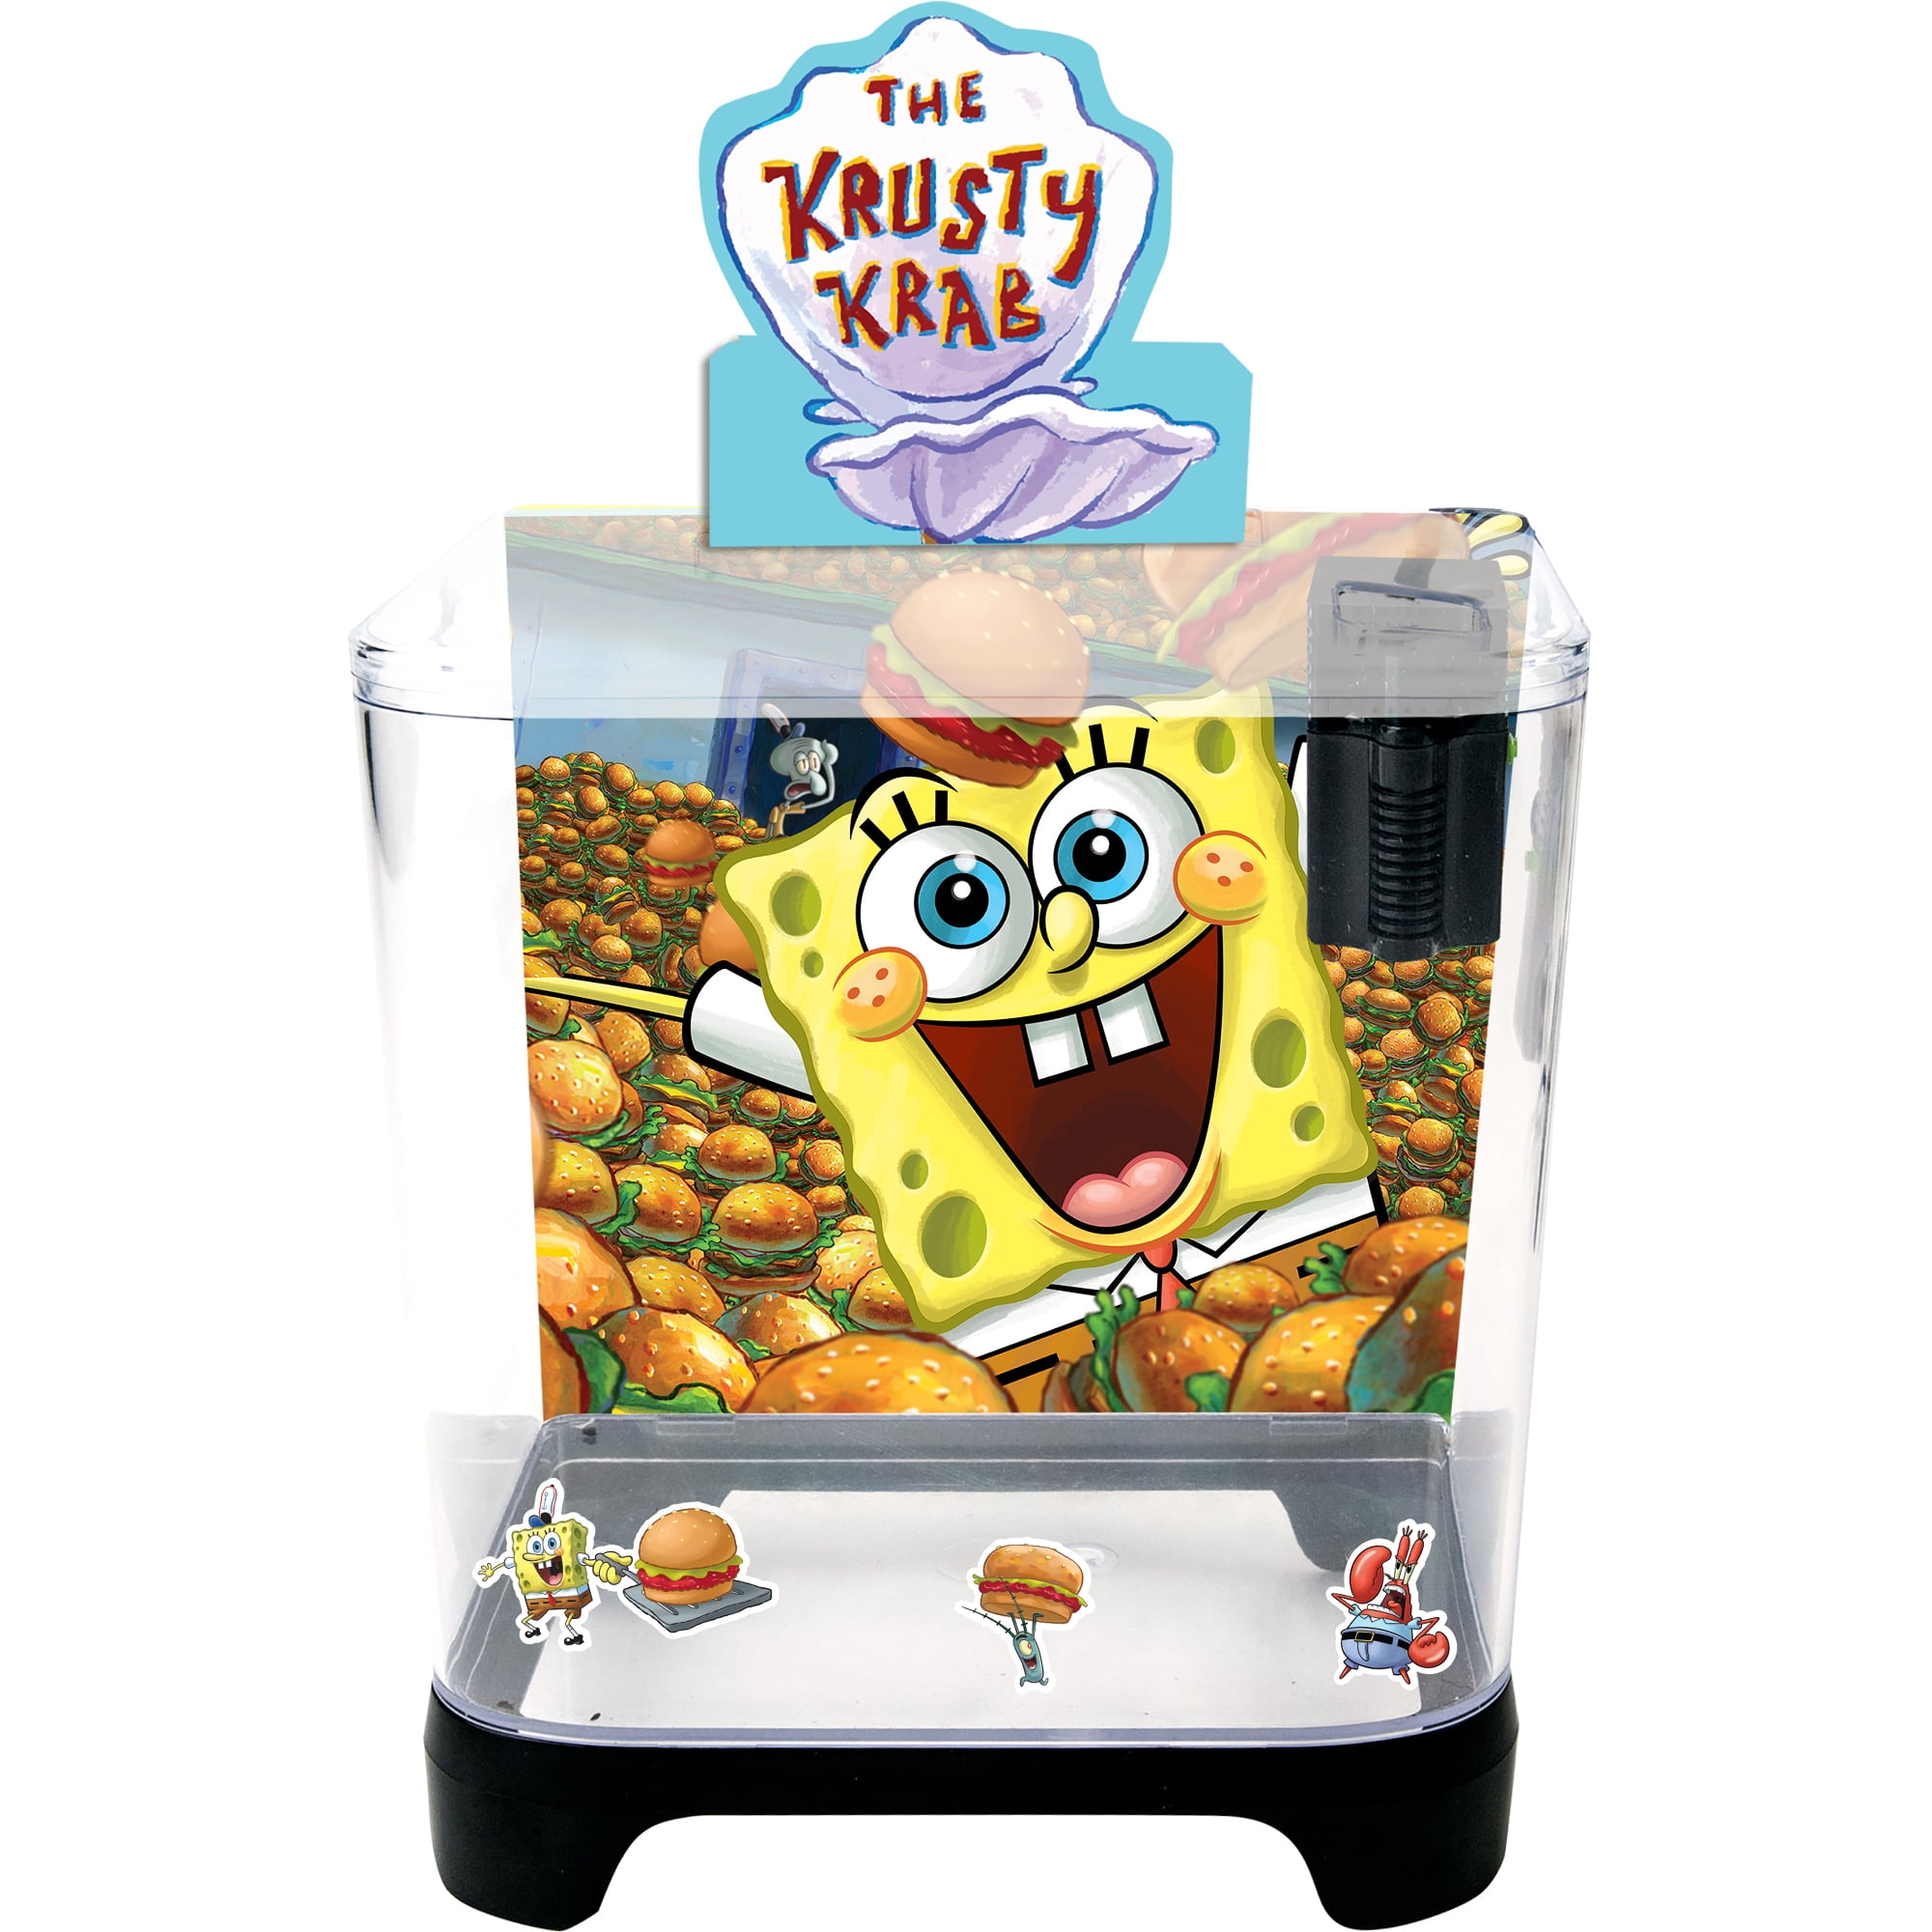 Penn-Plax SpongeBob SquarePants Plastic Aquarium Starter Kit with 1.5 Gallon Fish Tank